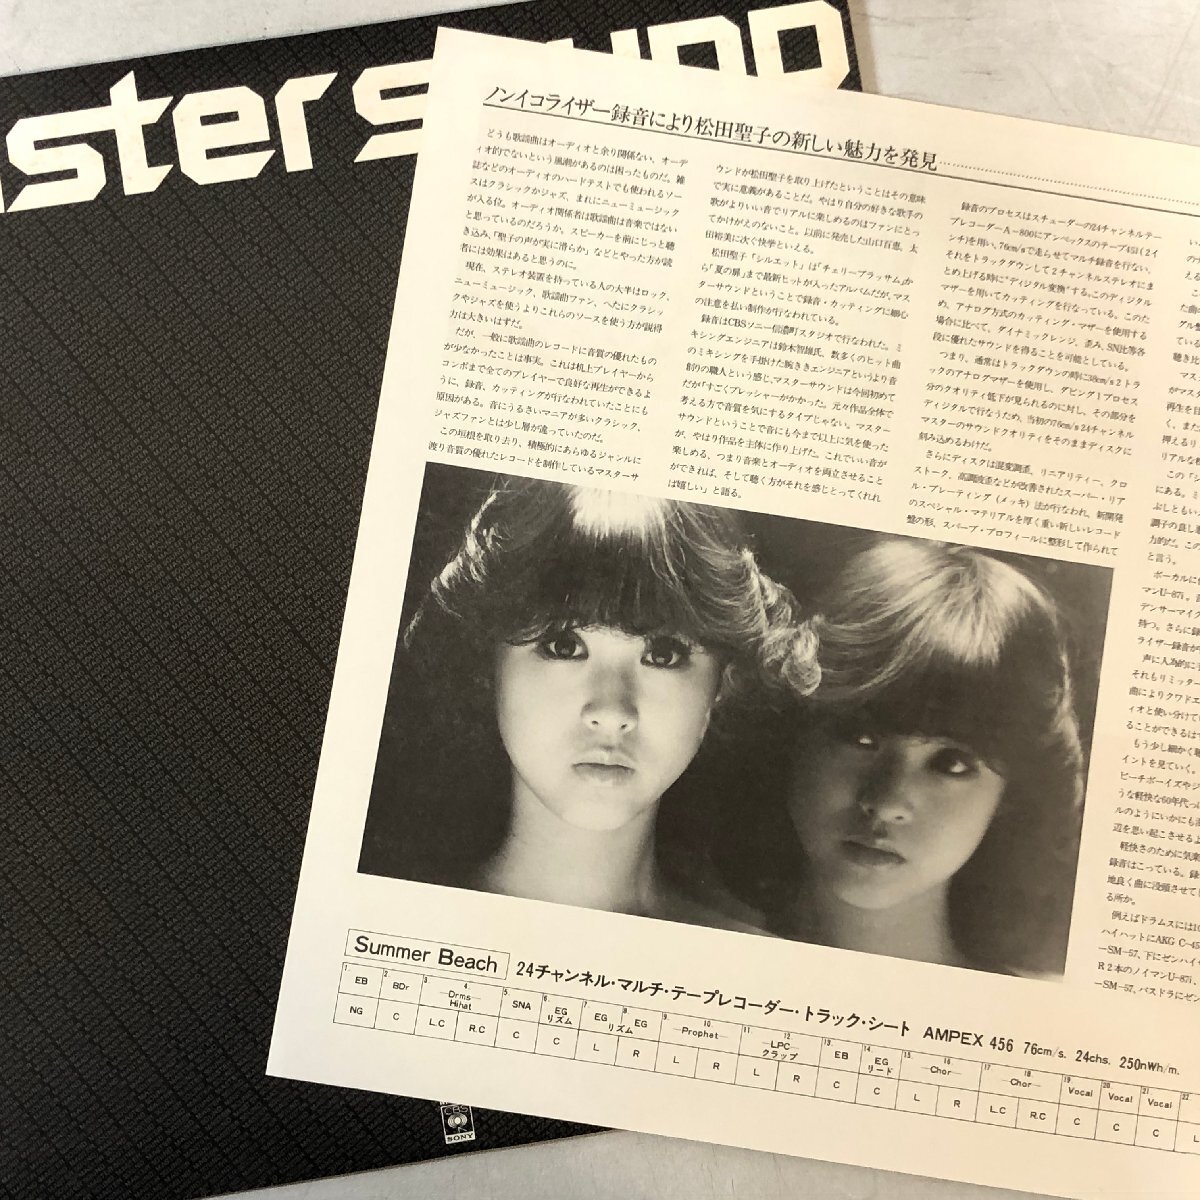 [MASTER SOUND LP] Matsuda Seiko / Silhouette ~ Silhouette ~ /[ Cherry bla Sam ][ summer. door ] Zaitsu Kazuo Matsumoto . obi .. attaching CBS 30AH1204 ^